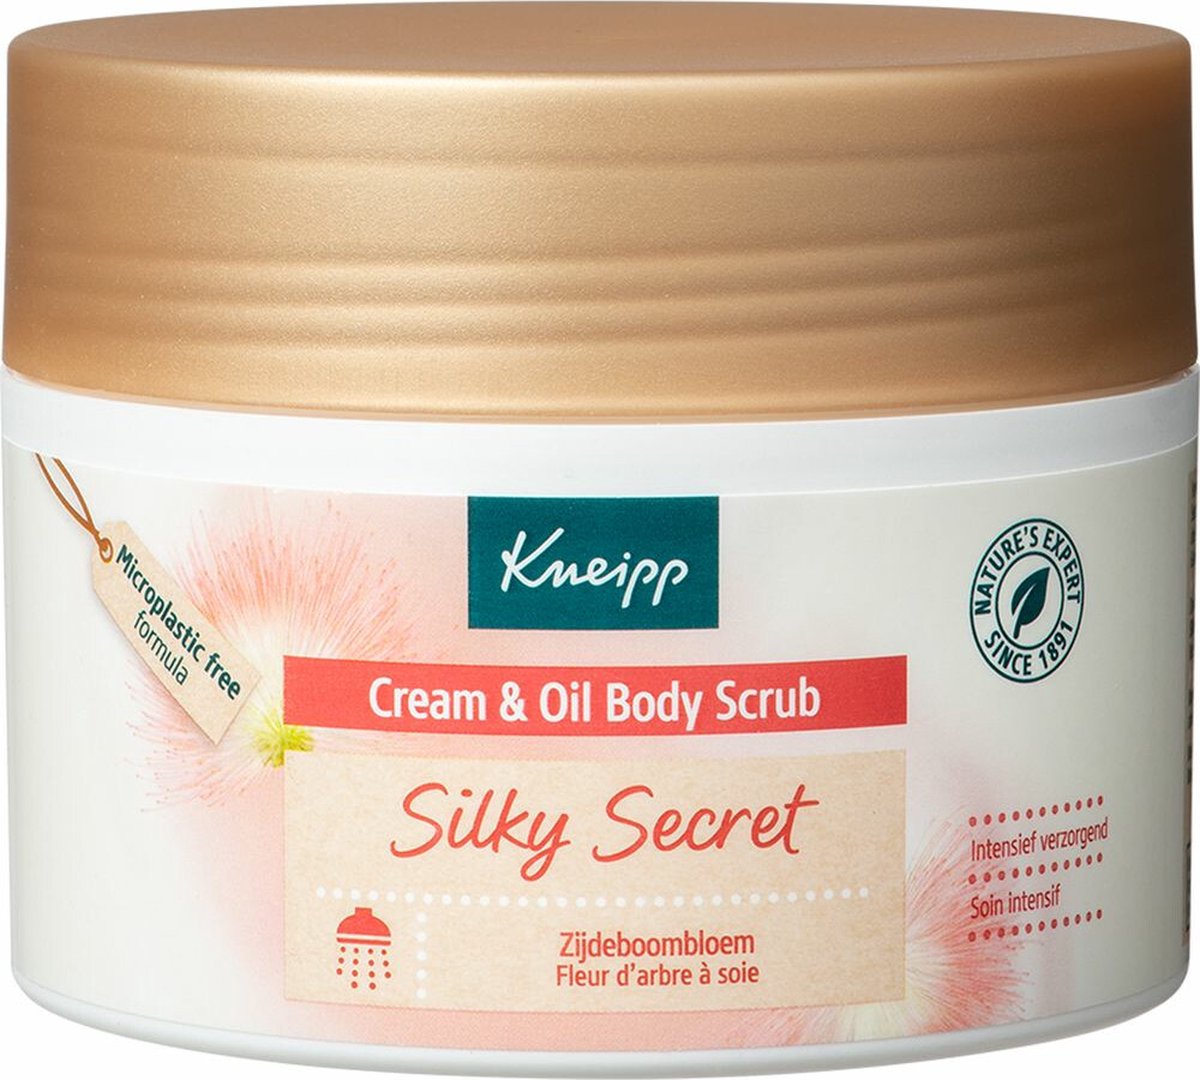 Kneipp Silky Secret - Cream & oil body scrub - Zijdeboombloesem - Voor een intens zachte en verzorgde huid - 1 st - 200 gr - Kneipp